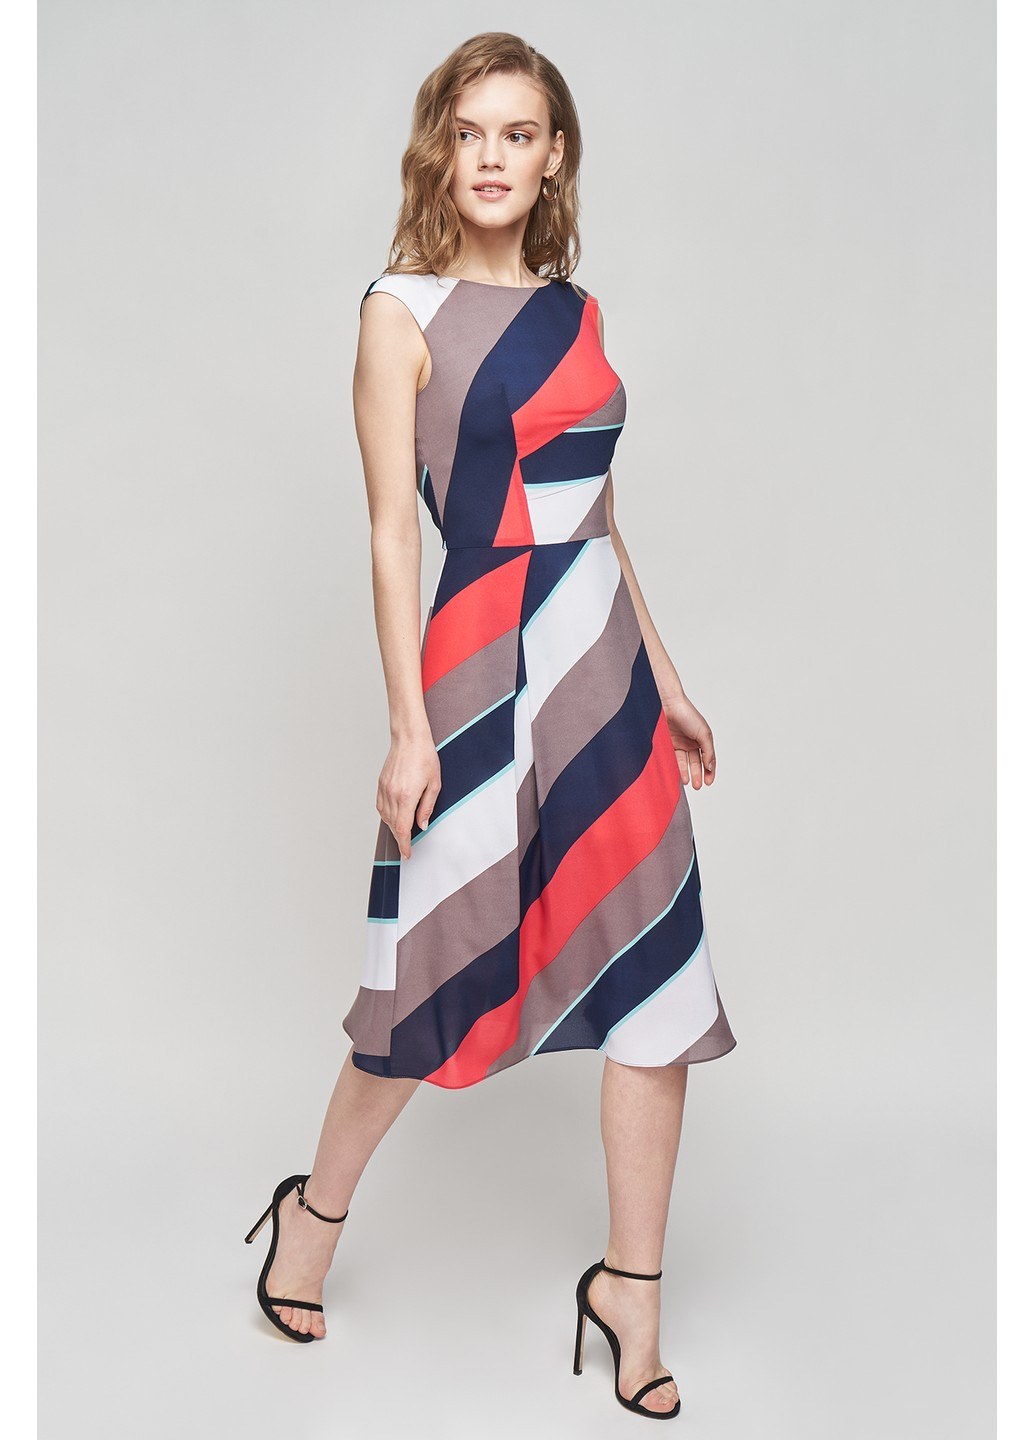 Комбінована ділова сукня тара кльош, з пишною спідницею BYURSE з абстрактним візерунком